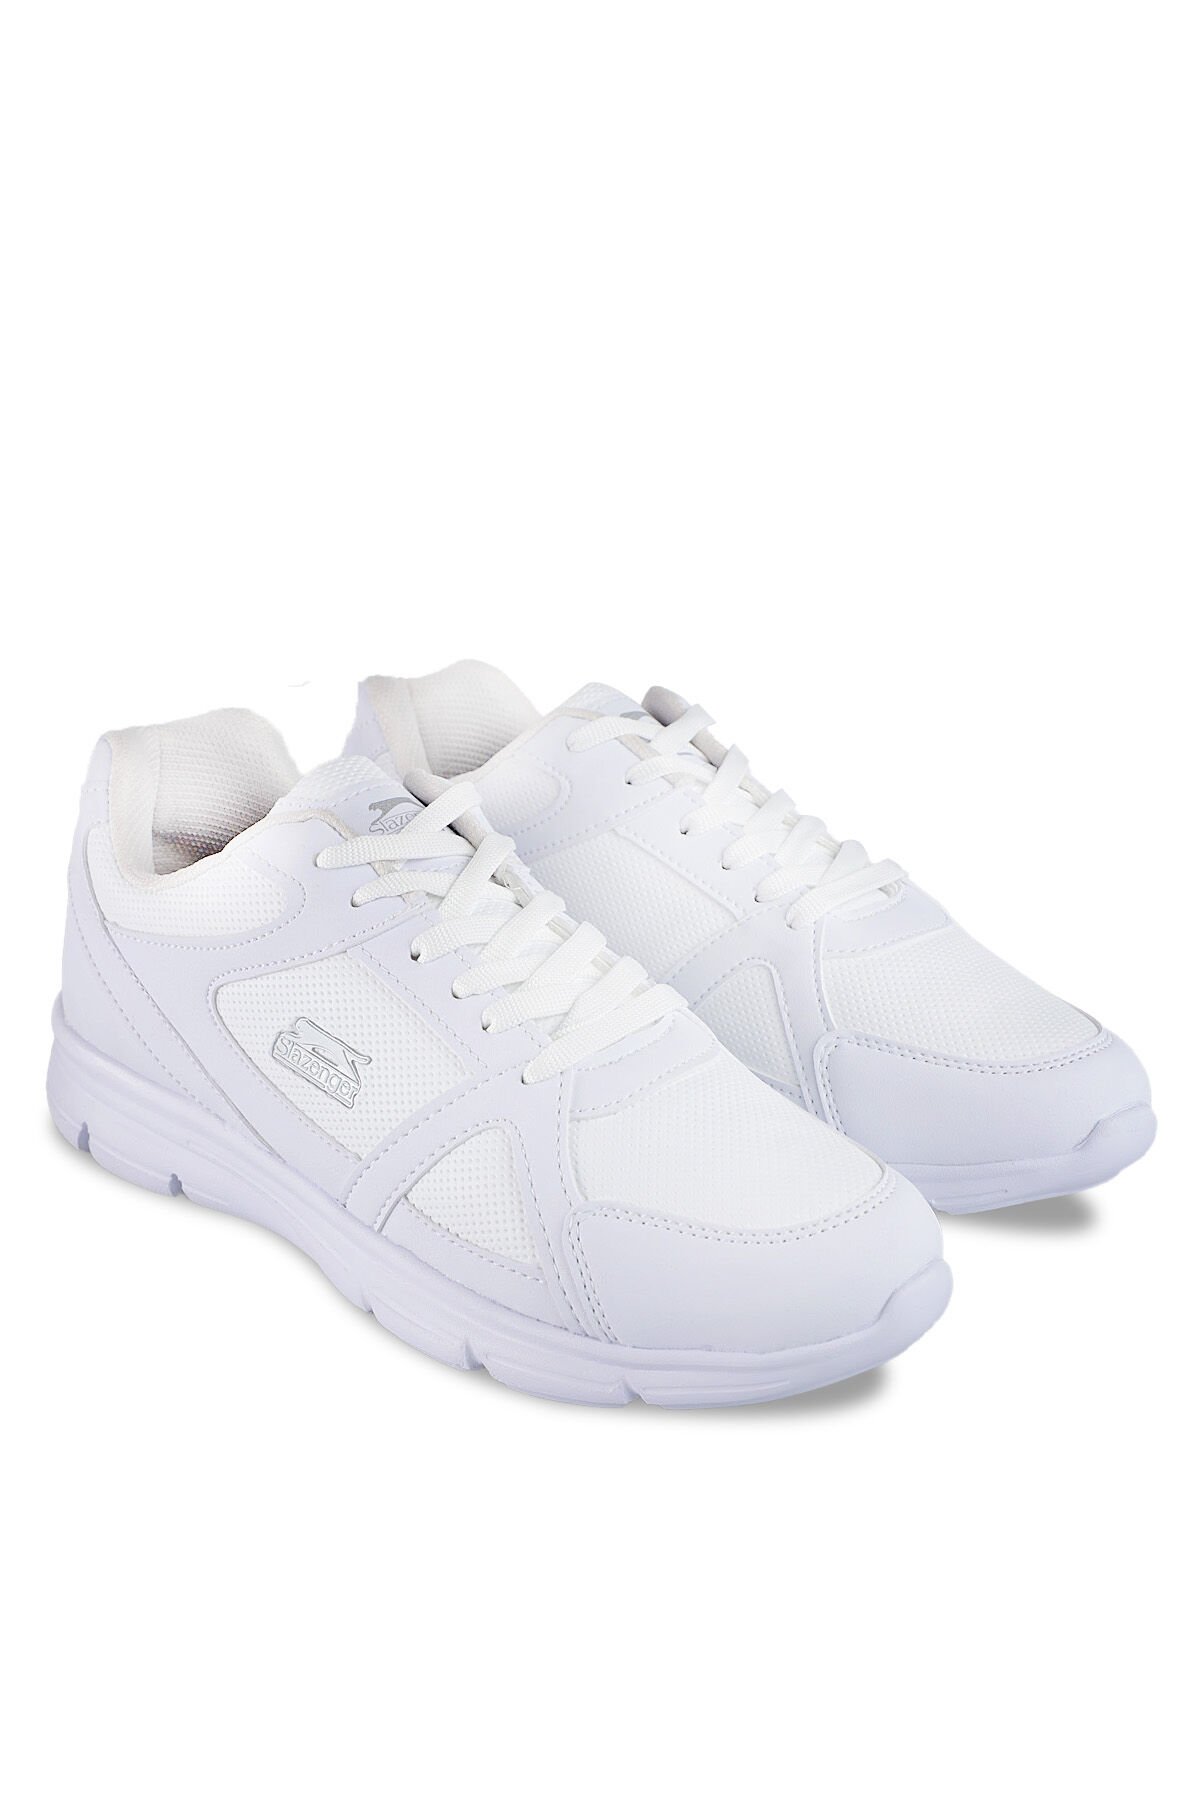 Slazenger PERA Sneaker Kadın Ayakkabı Beyaz - Thumbnail